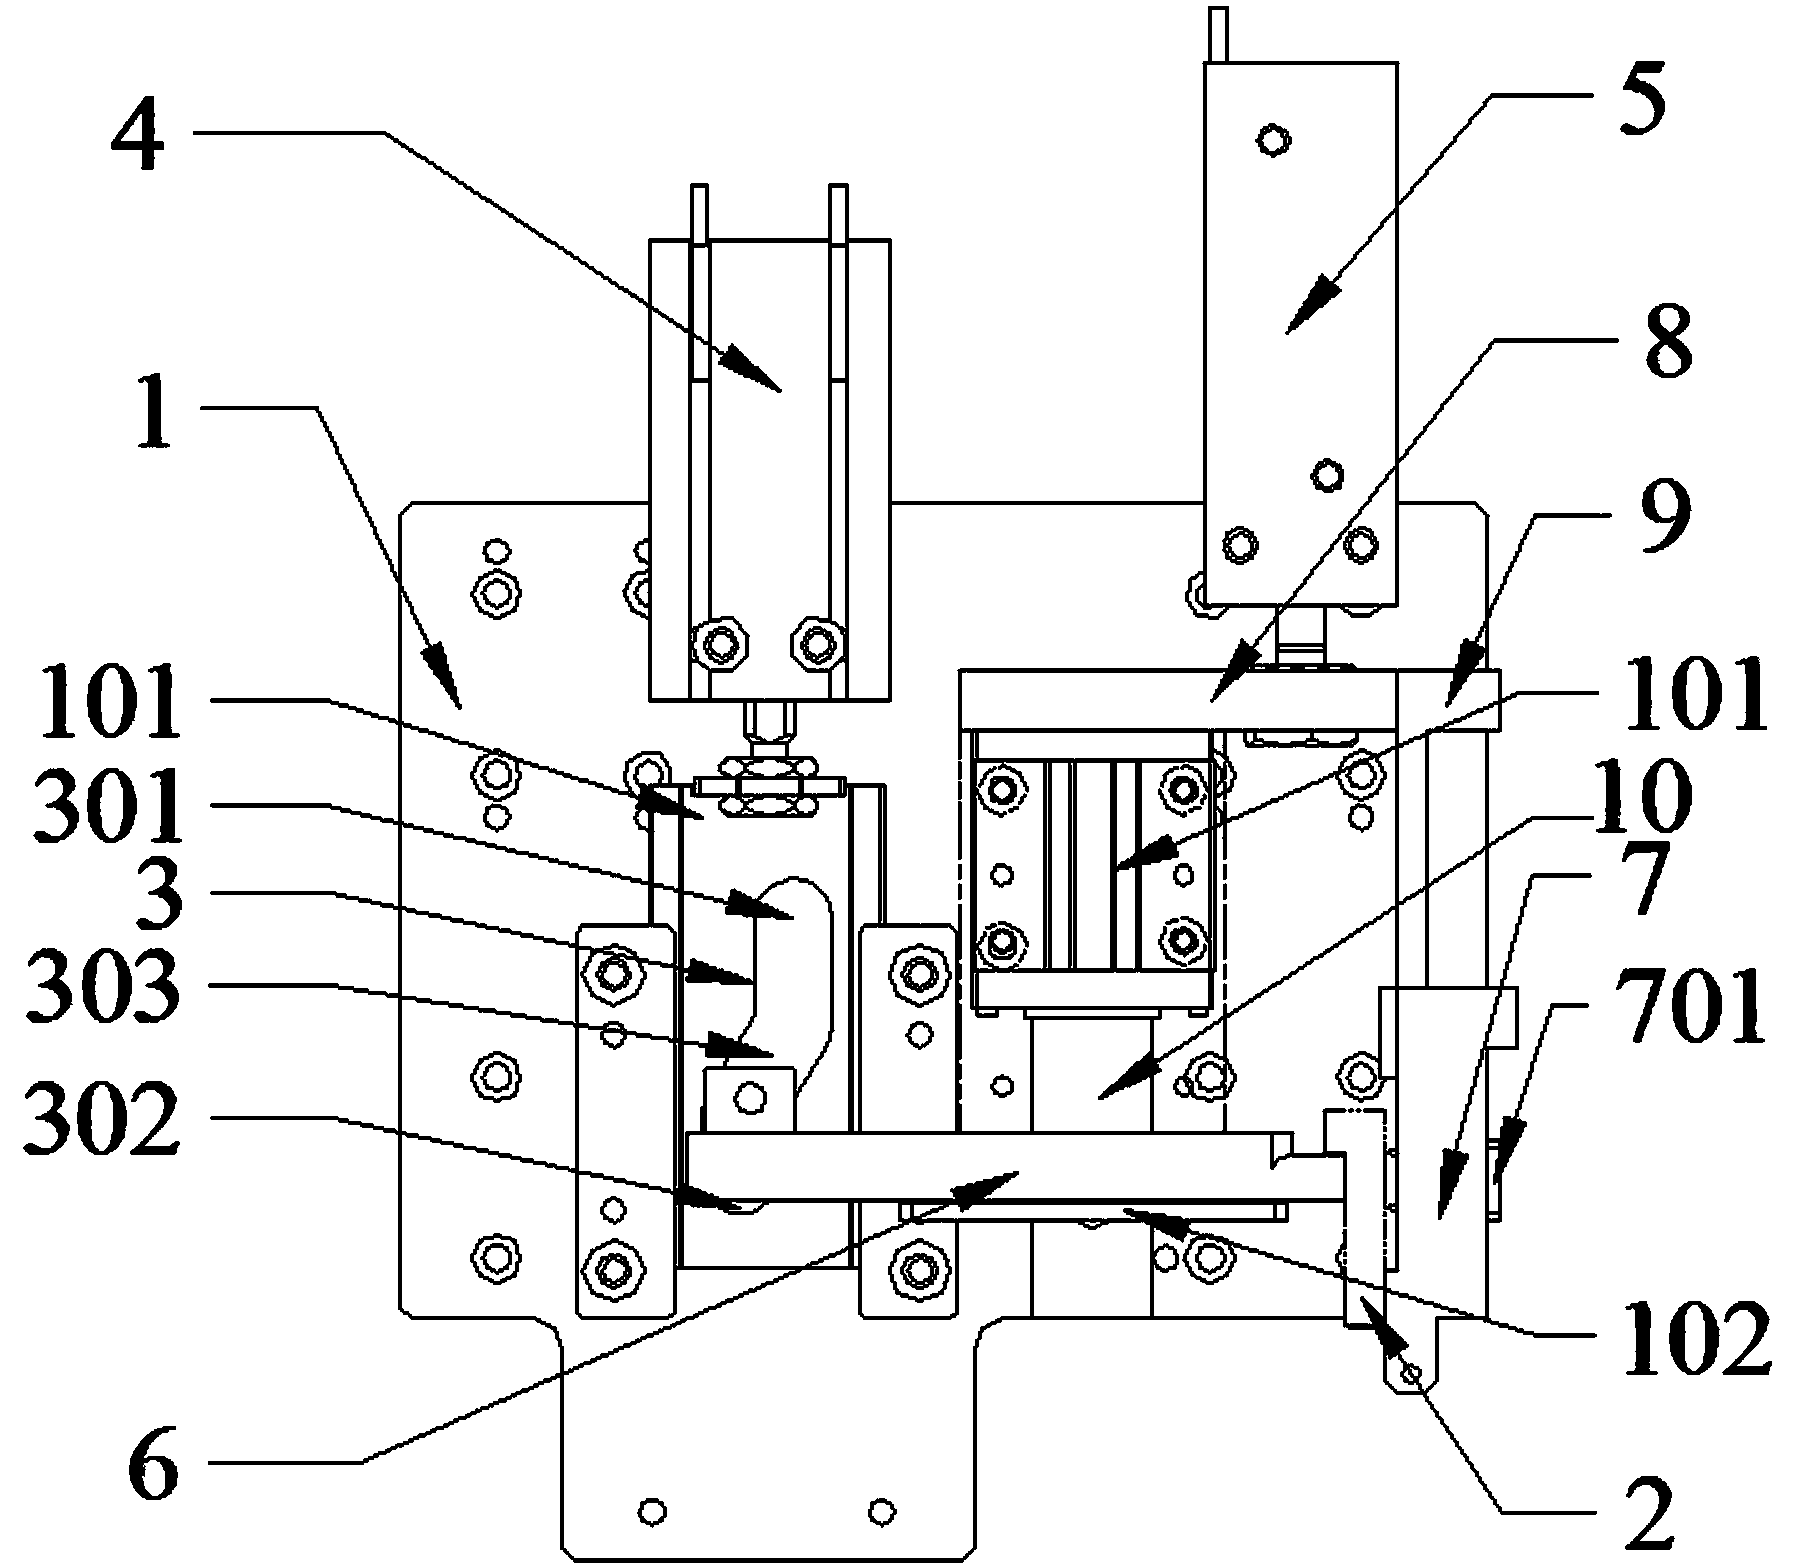 Press mounting machine for workpiece